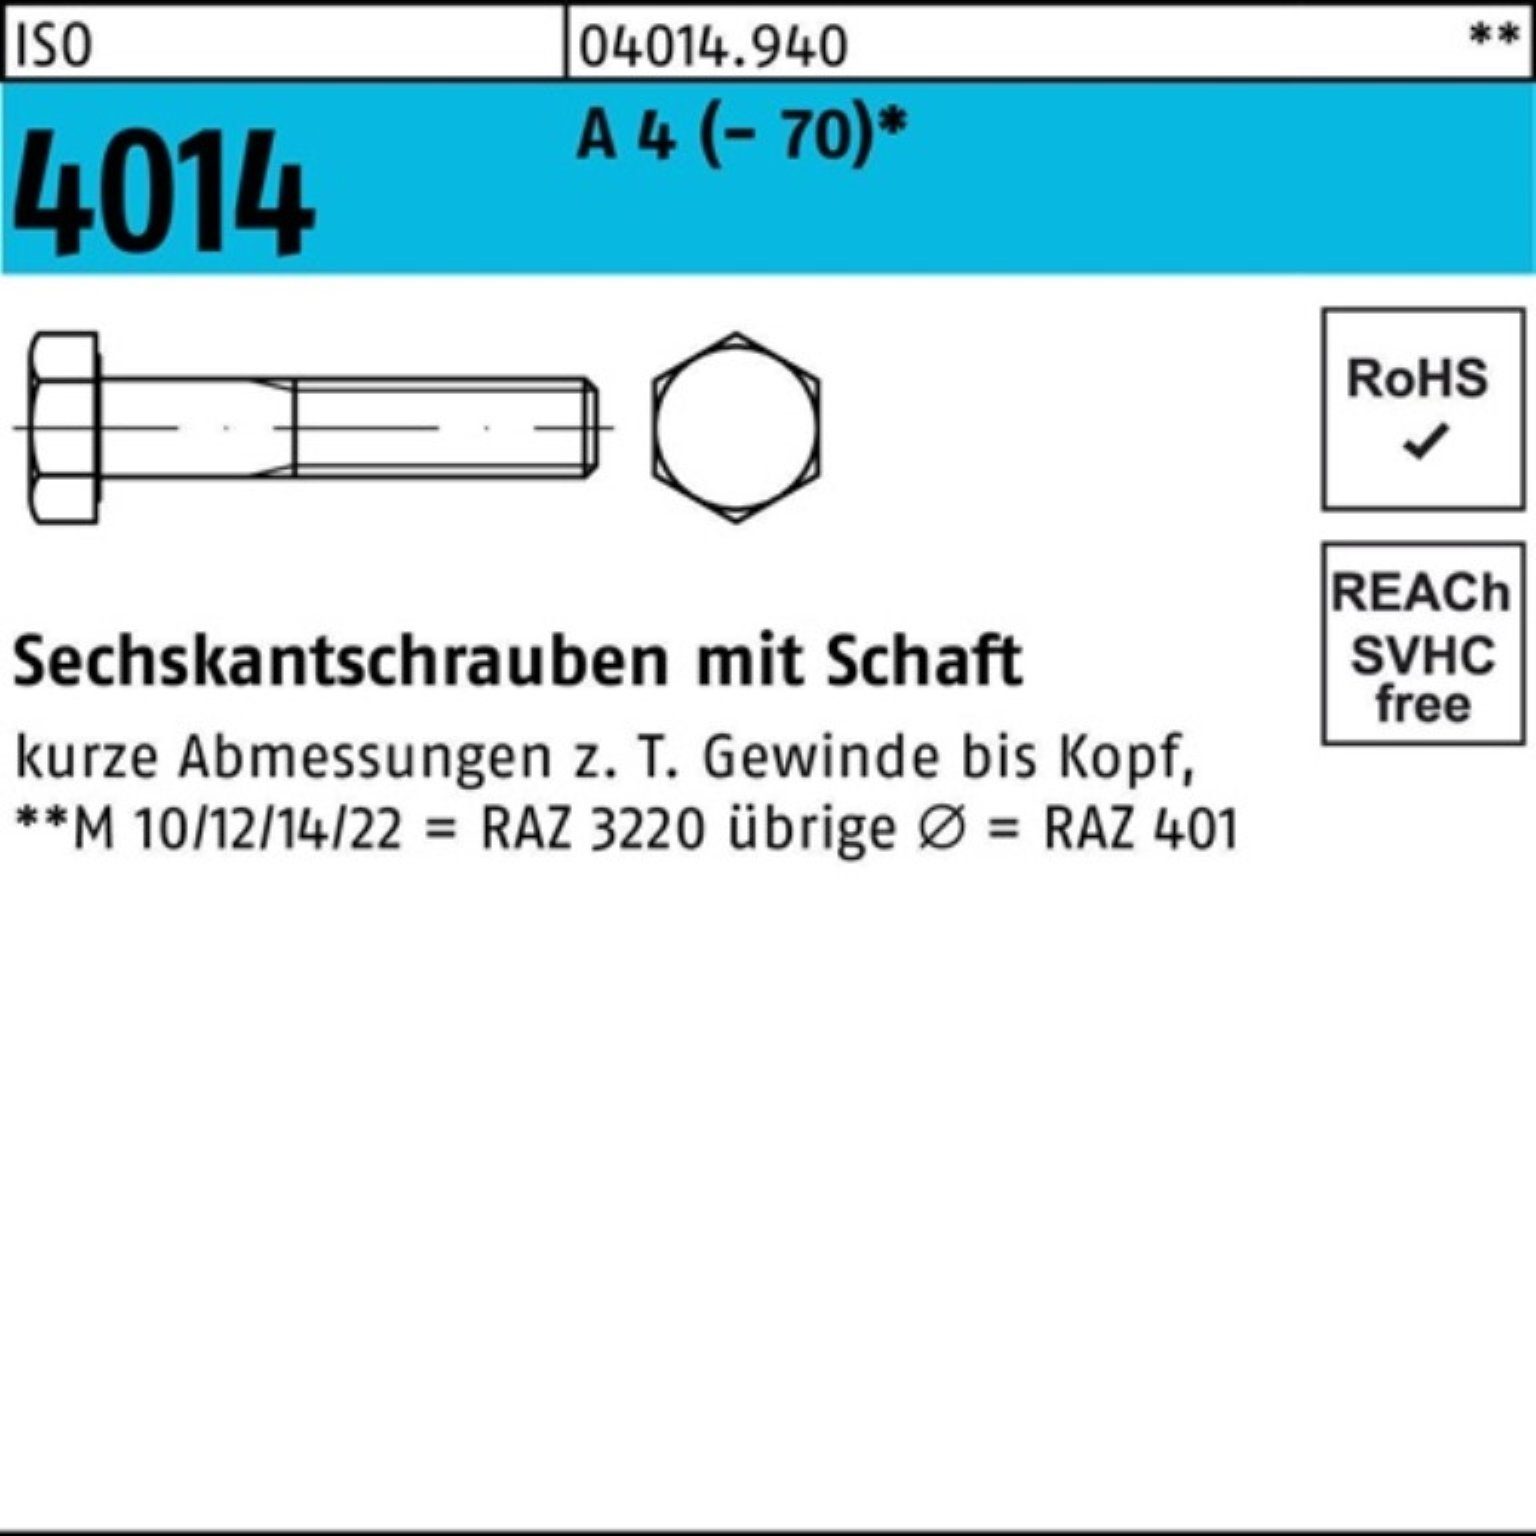 Bufab Sechskantschraube 100er Pack Sechskantschraube ISO 4014 Schaft M8x 90 A 4 (70) 100 St